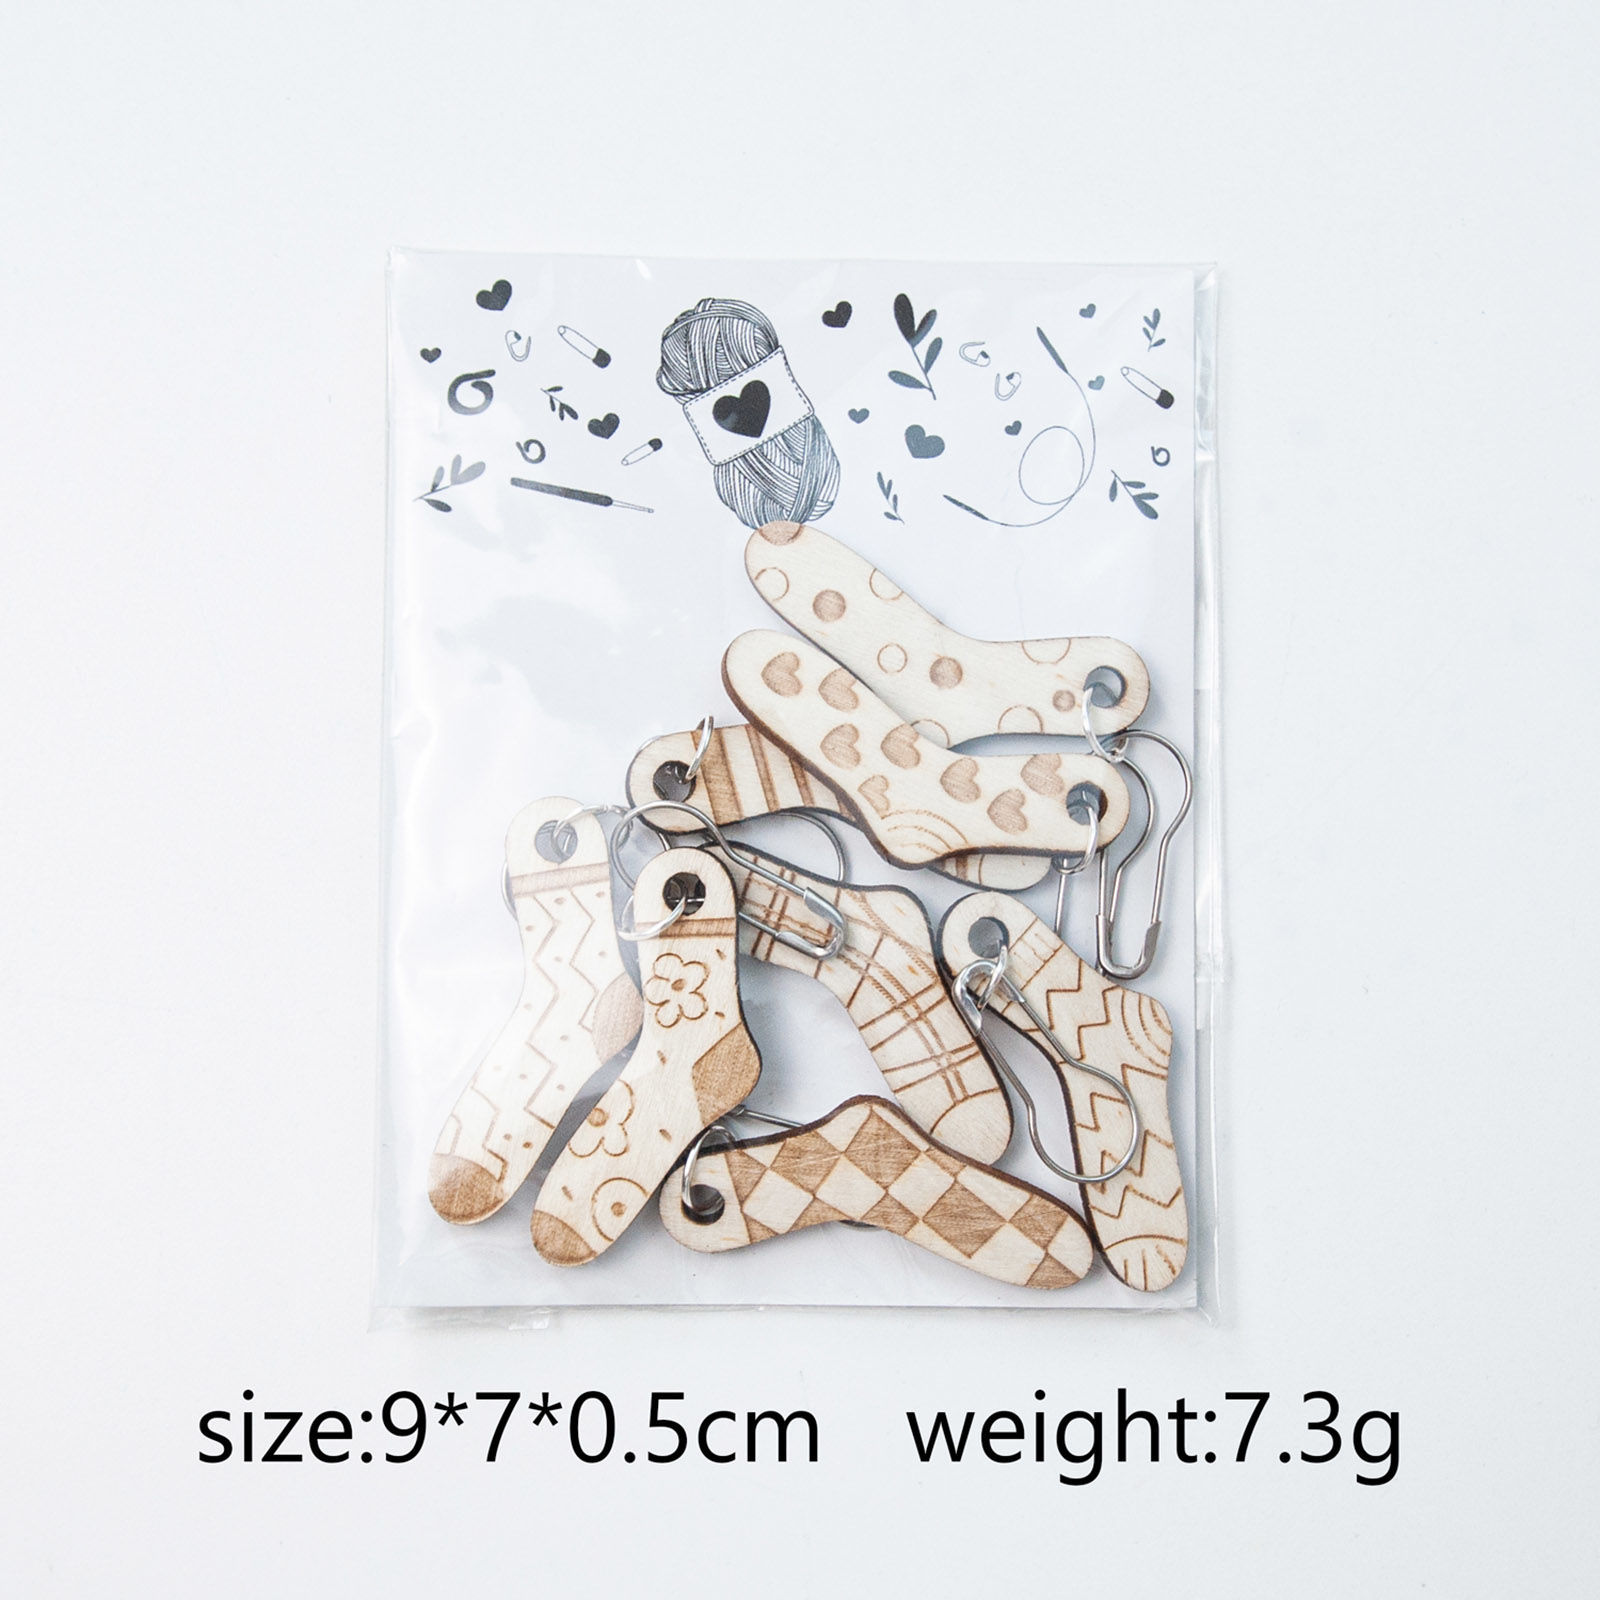 ウッド+合金 編み物用品 段数マーカー 目数段数リング ステッチマーカー ソックス ナチュラル ランダムに 5.5cm、 1 セット (約 8個/セット) の画像